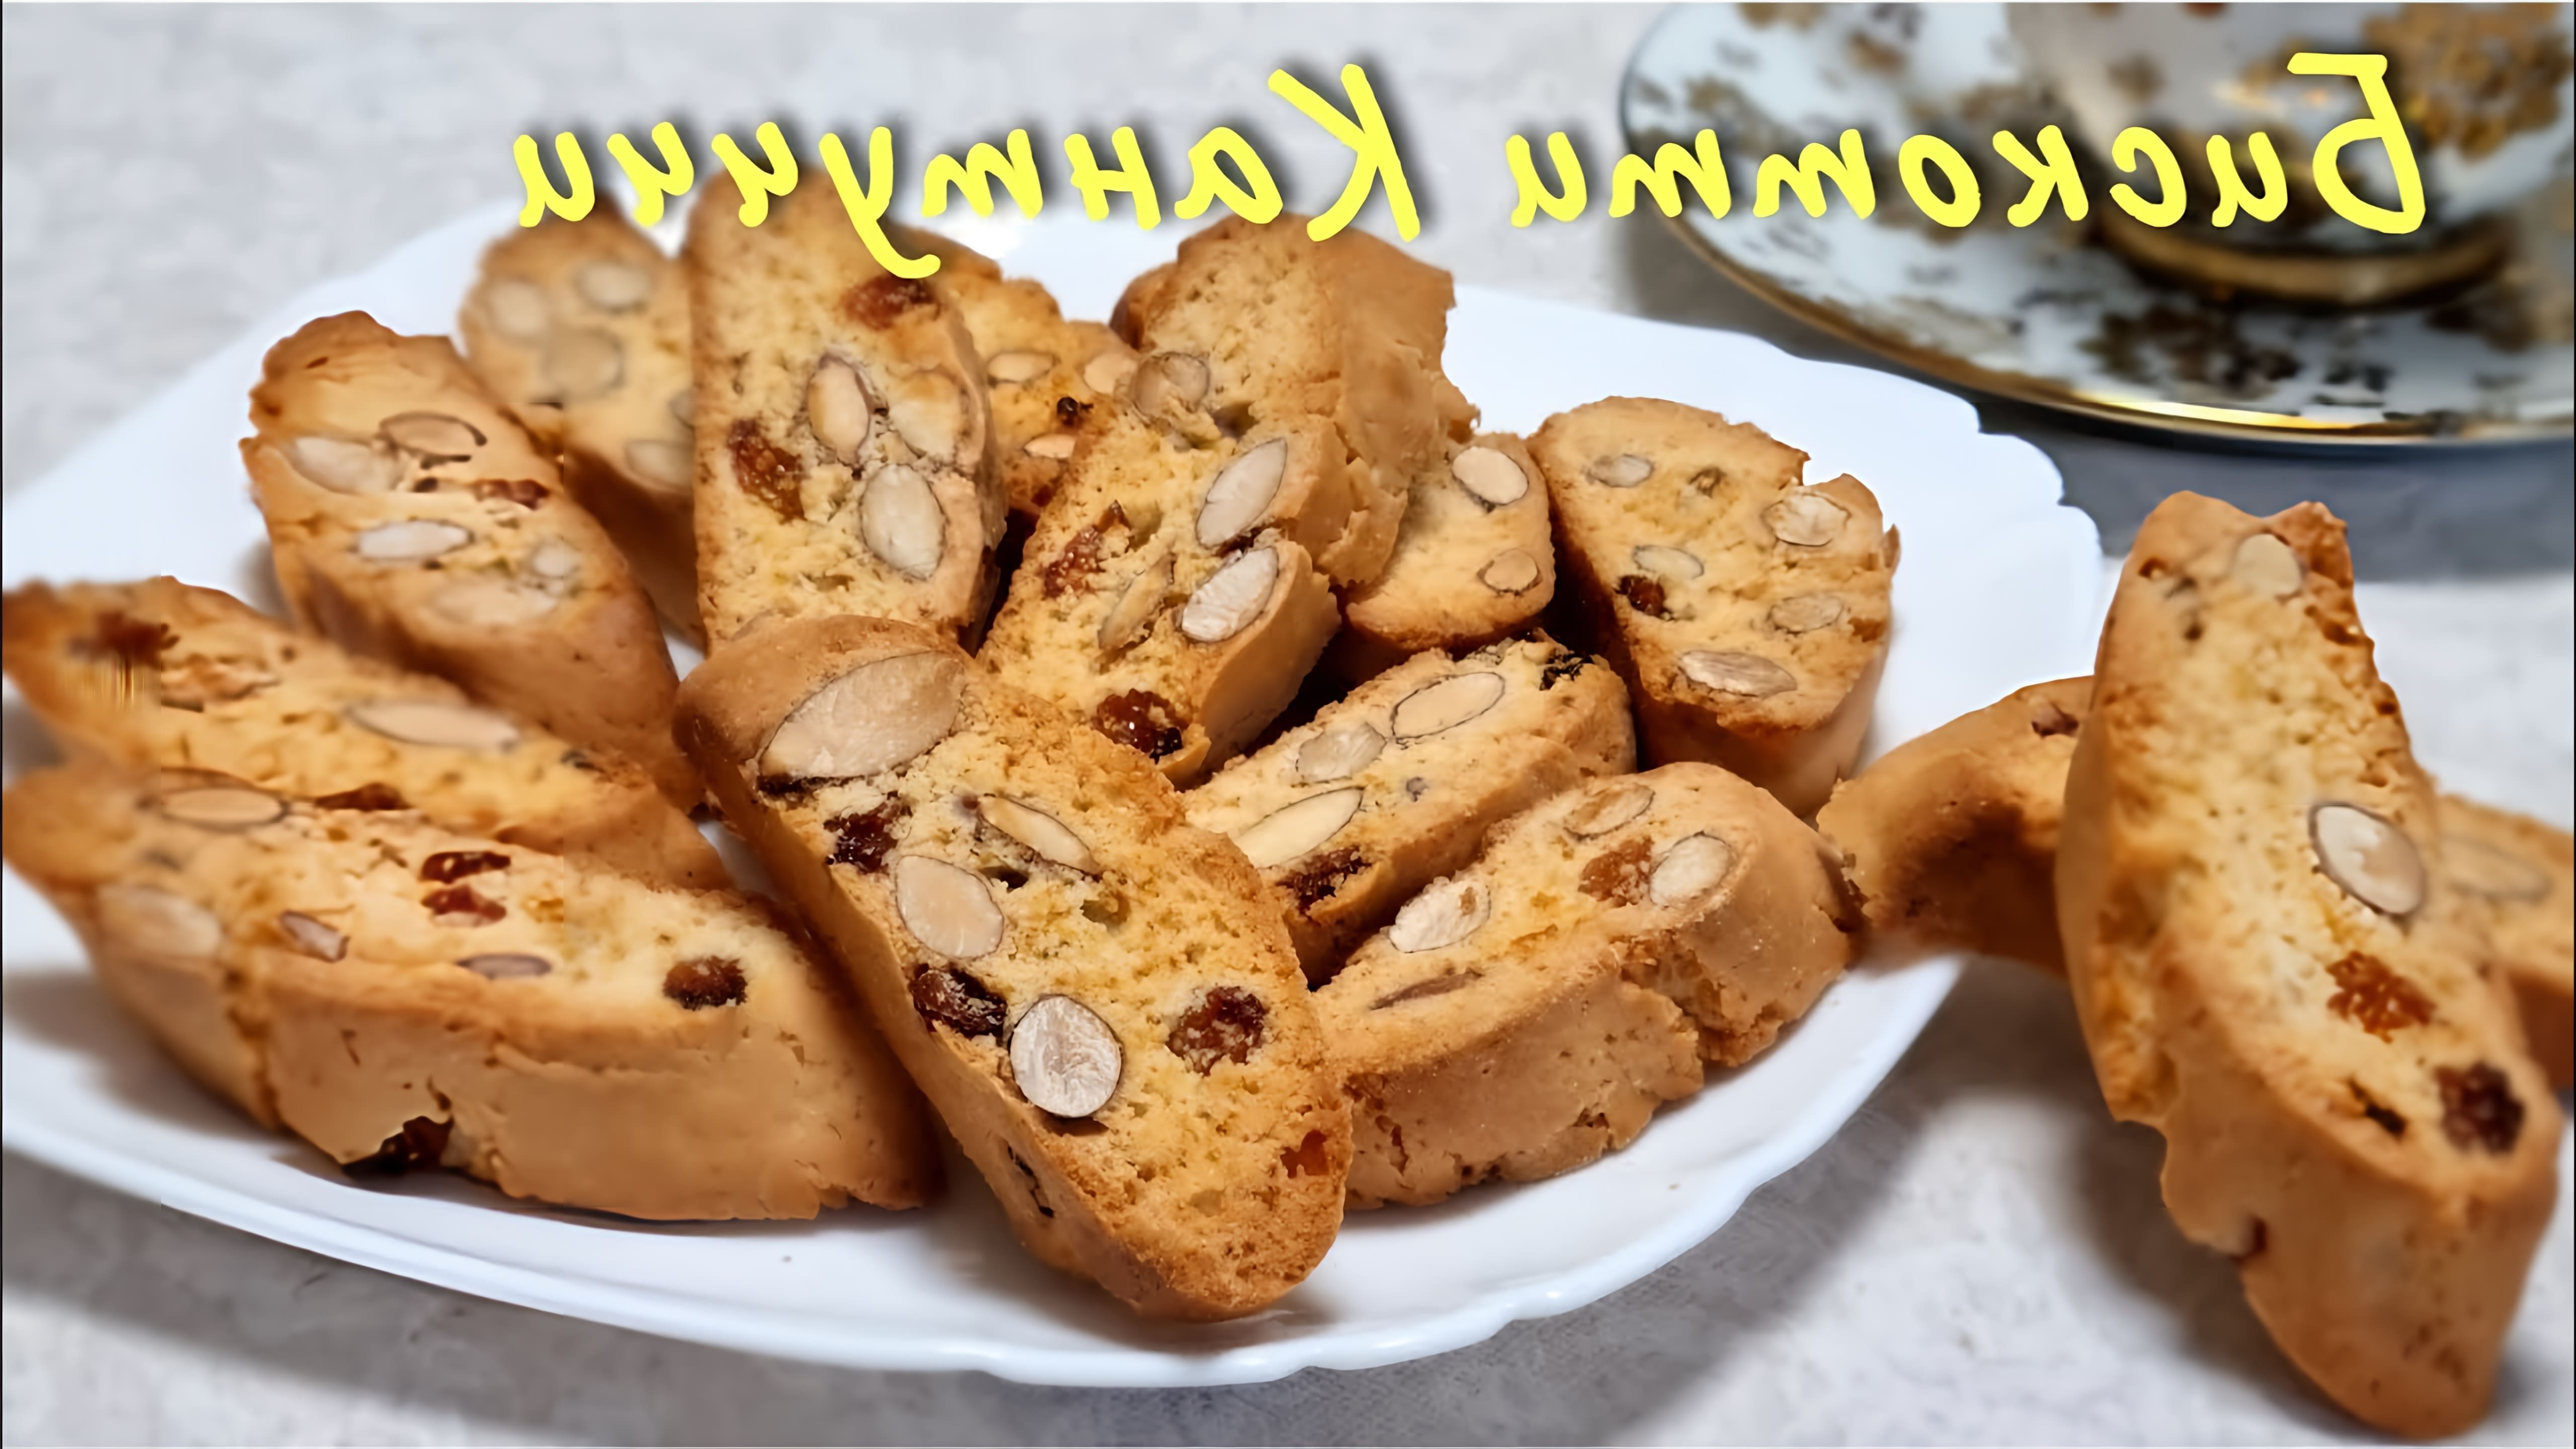 В этом видео демонстрируется процесс приготовления итальянского печенья "Контучини"